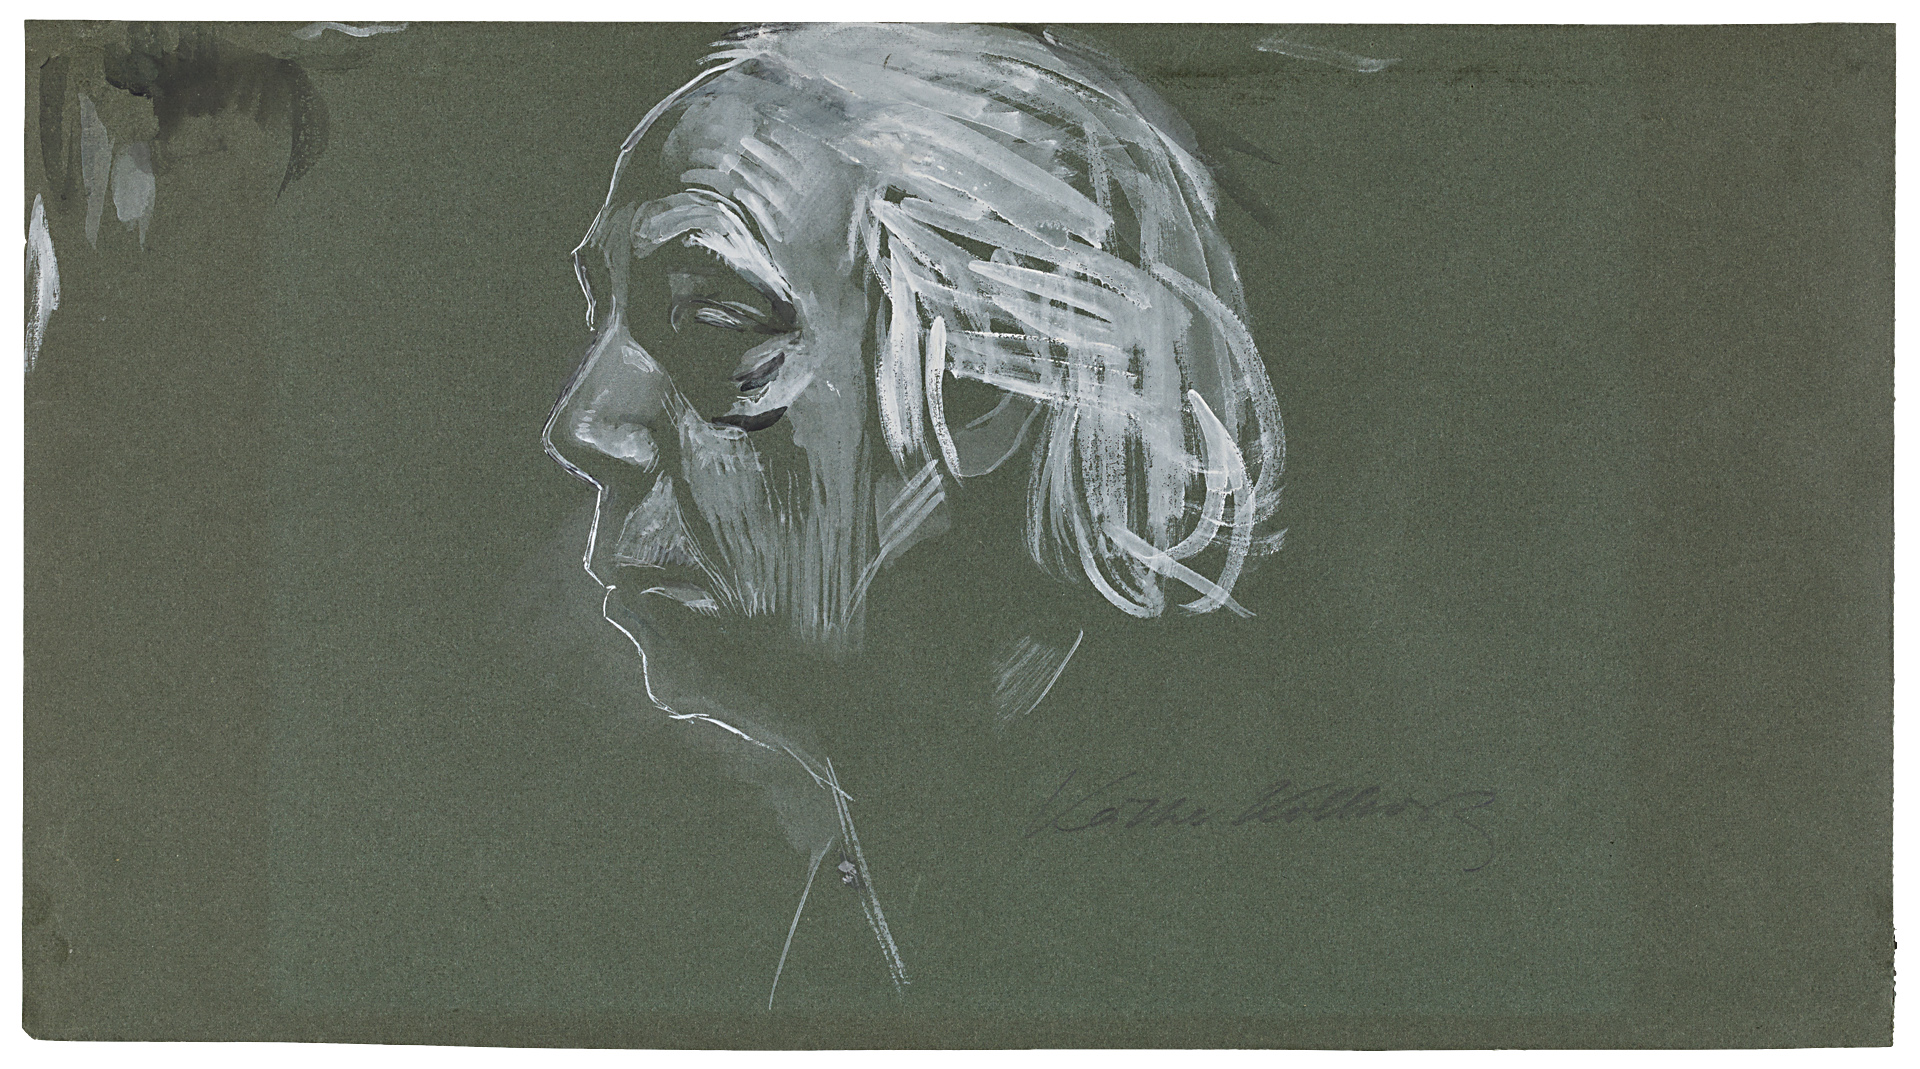 Käthe Kollwitz, Autoportrait, profil gauche, 1924, pinceau en blanc opaque, lavis noir sur papier vert foncé, NT 1001, Collection Kollwitz de Cologne © Käthe Kollwitz Museum Köln 